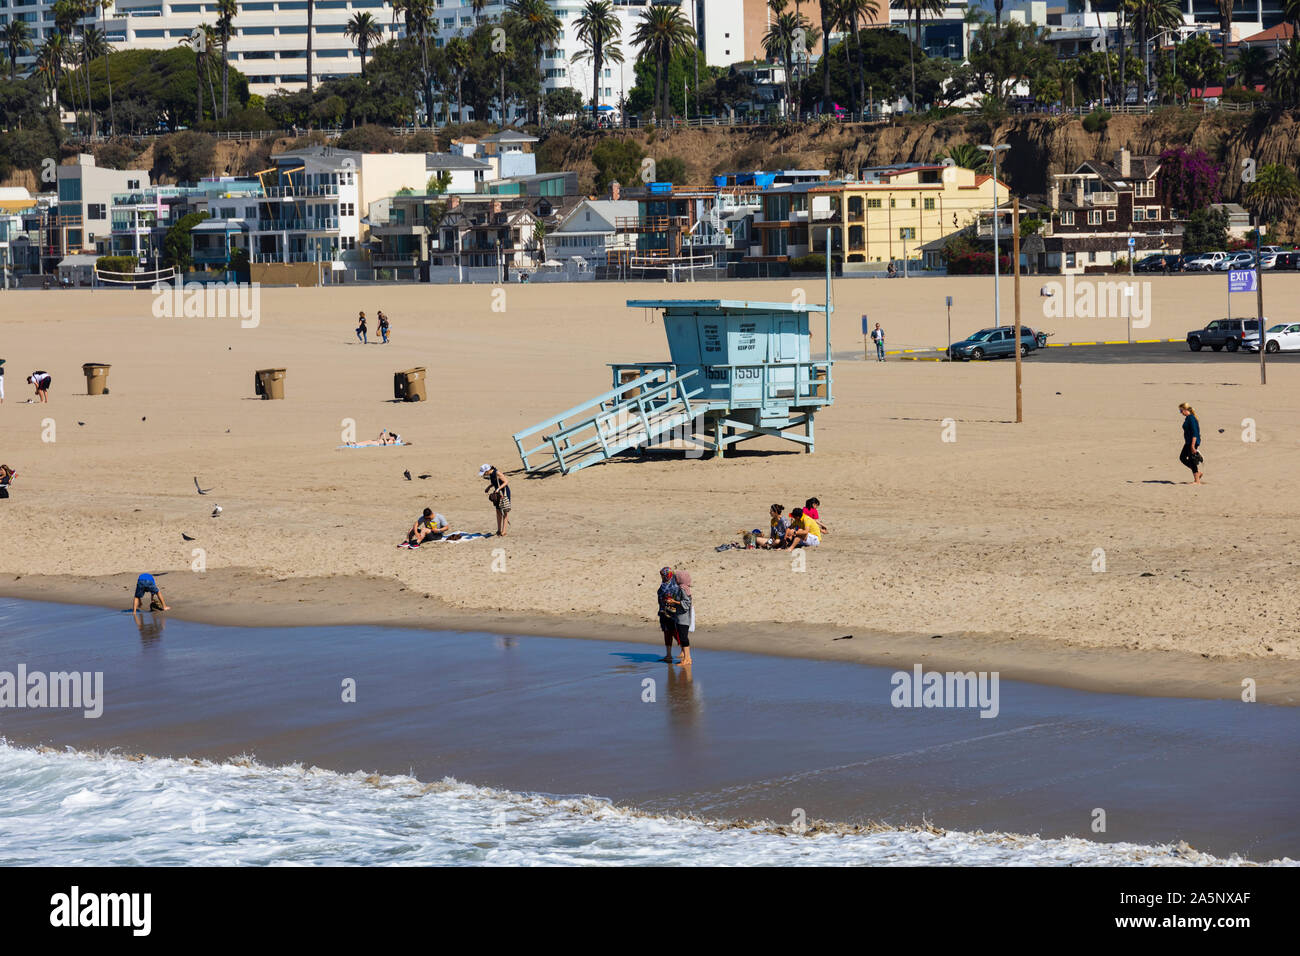 Les gens sur la plage avec tour de sauveteur, plage de Santa Monica, Californie, États-Unis d'Amérique. ÉTATS-UNIS. Octobre 2019 Banque D'Images